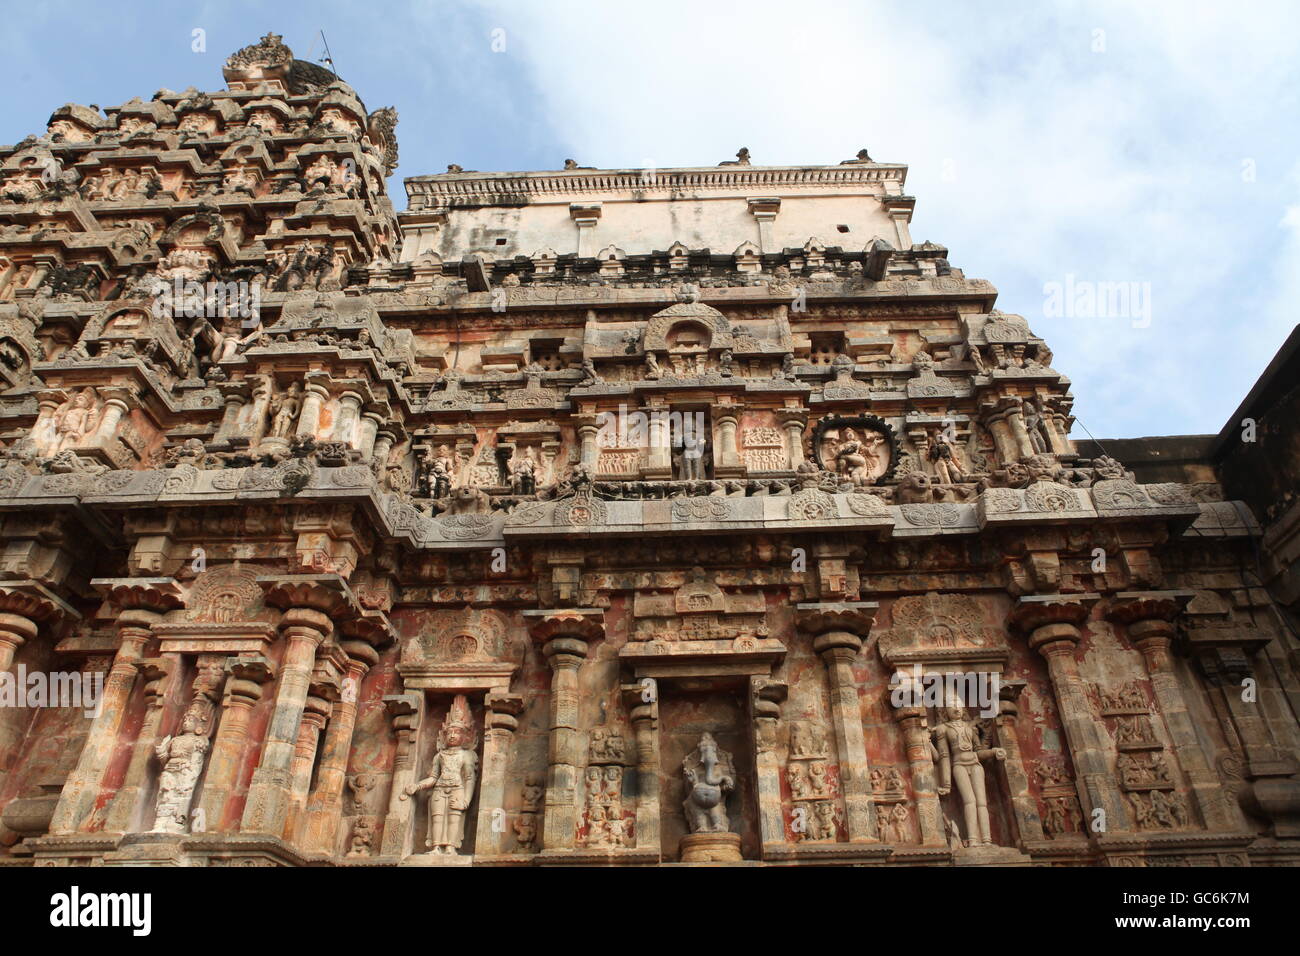 Airavateesvara temple près de kumbakonam,Tamil nadu.c'est un site du patrimoine mondial de l'UNESCO Banque D'Images